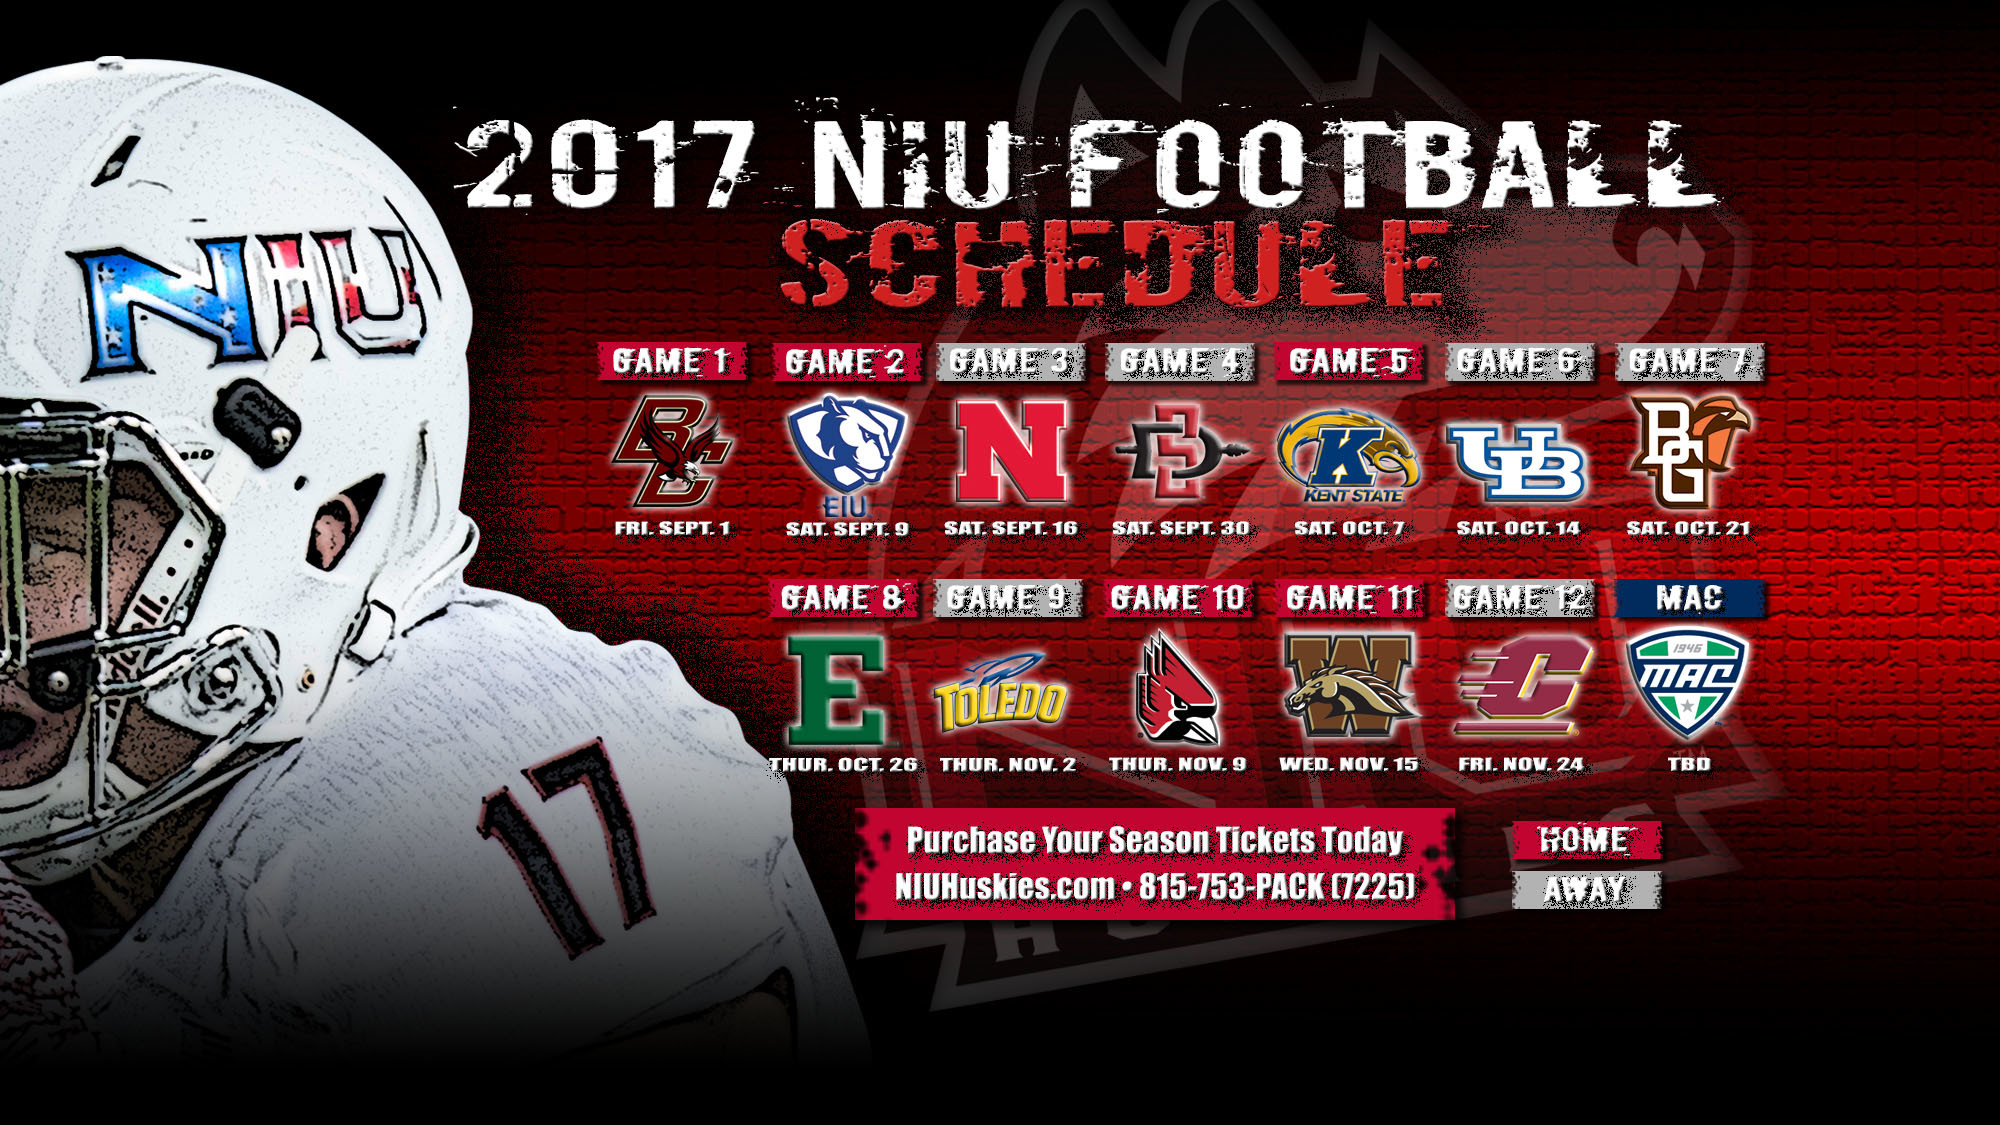 Niu Football 2017 Schedule Announced 
 Data Src Hd - 2017 Nebraska Cornhusker Football Schedule - HD Wallpaper 